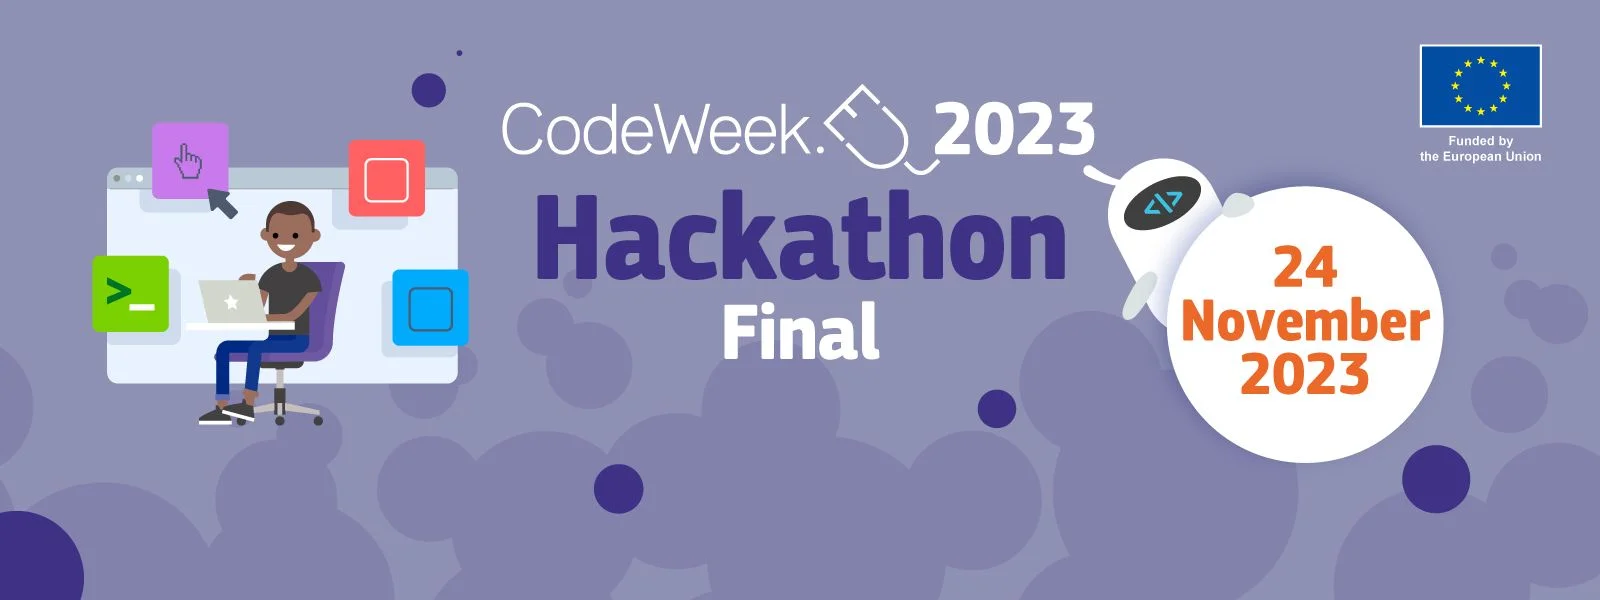 Final EU CodeWeek Hackathon 2023